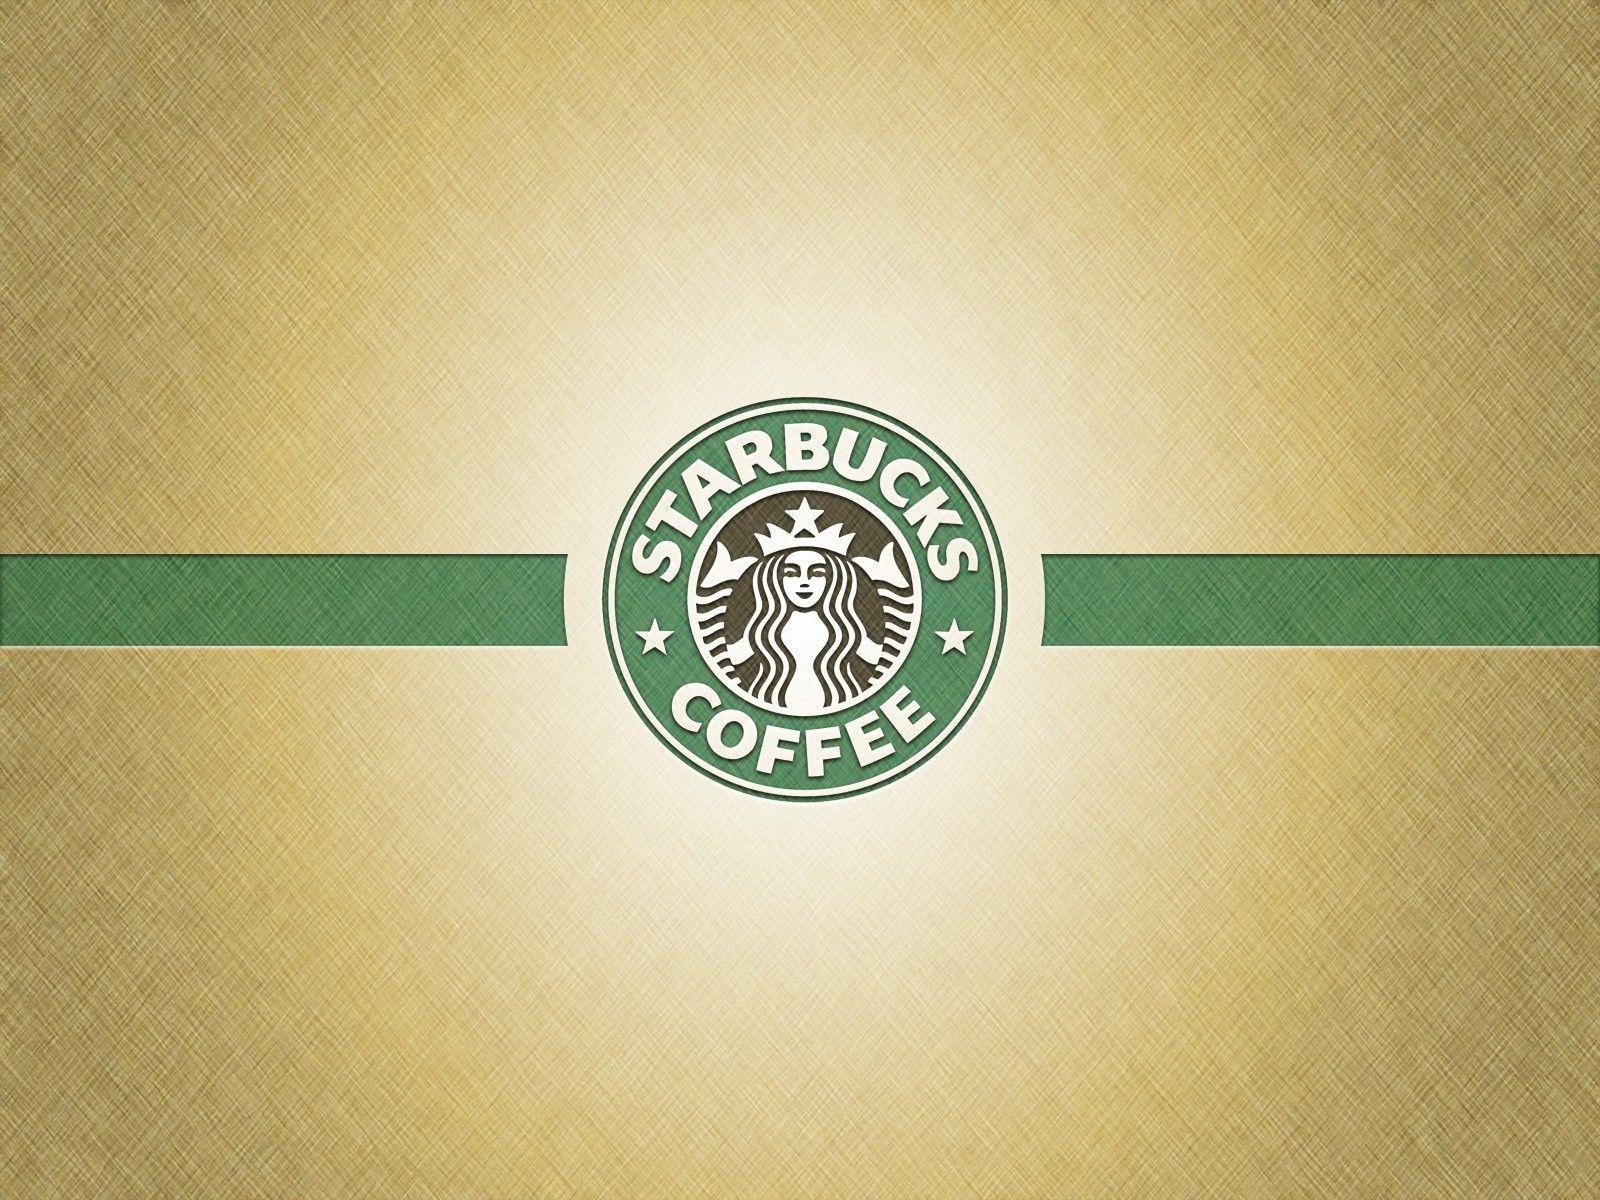 Girly Starbucks Logo - Starbucks Wallpaper (28+)